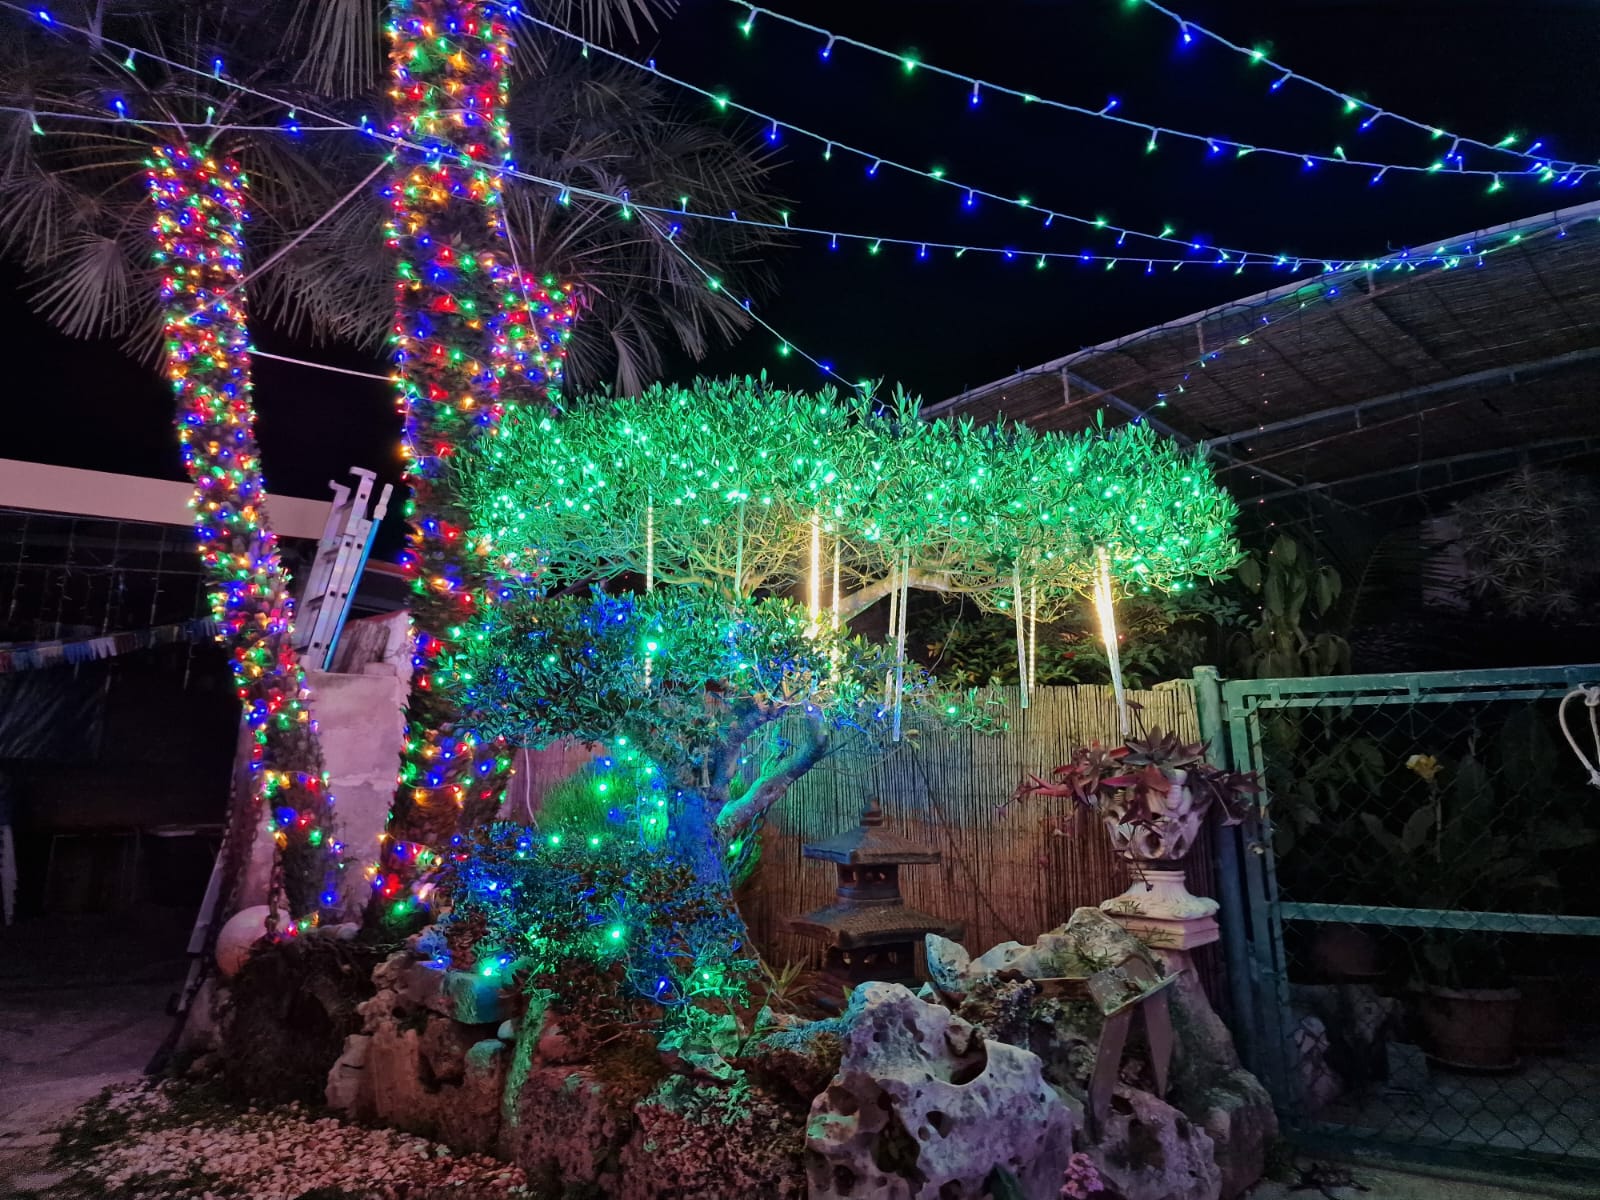 Iluminación navideña en el jardín de Celeste y Marcos